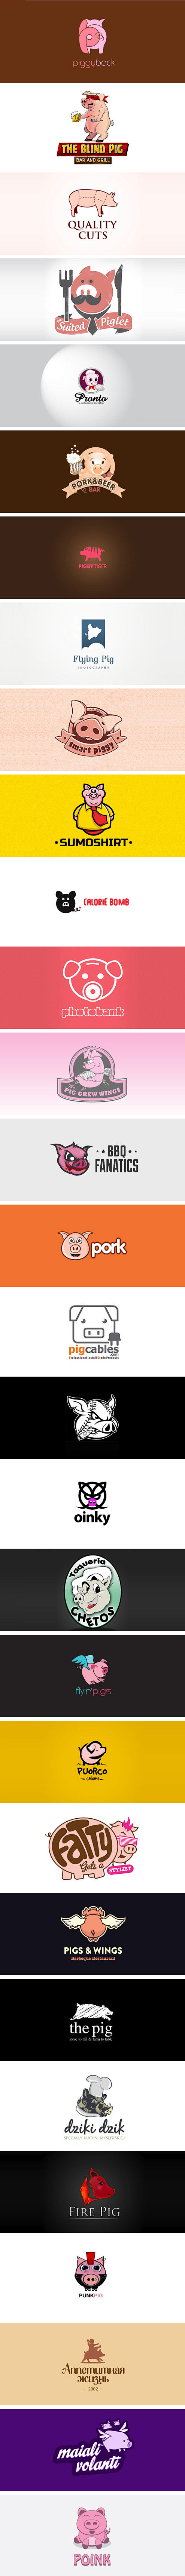 看看猪在logo设计中的不俗表现 - U...